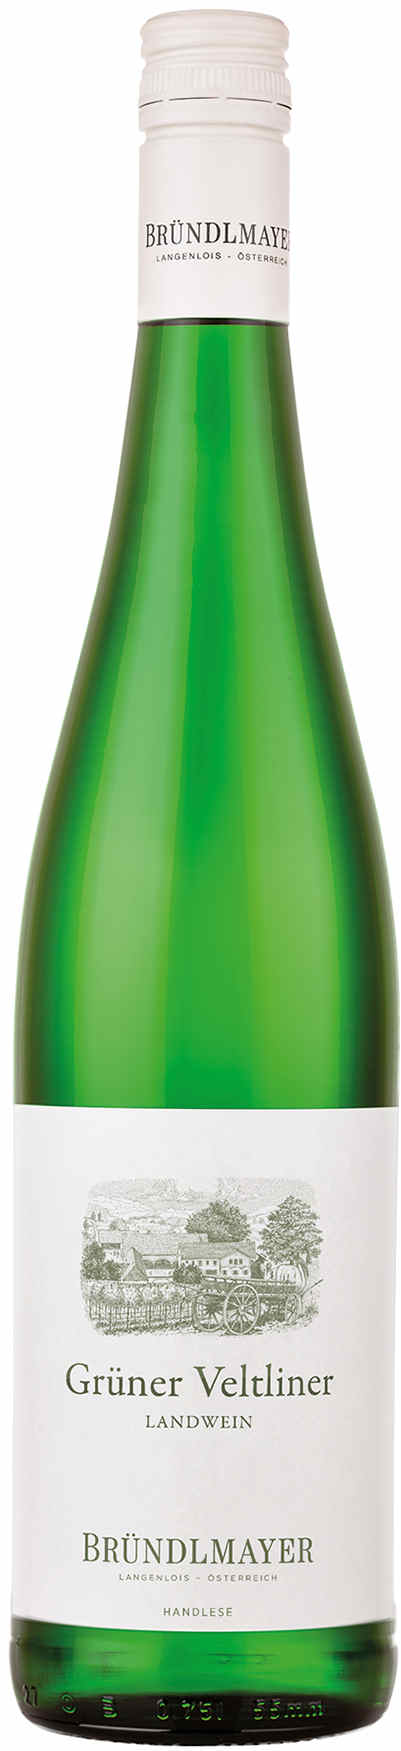 Grüner Veltliner | | | Bründlmayer 2021 Weißwein Landwein Weingut trocken | Vinoscout